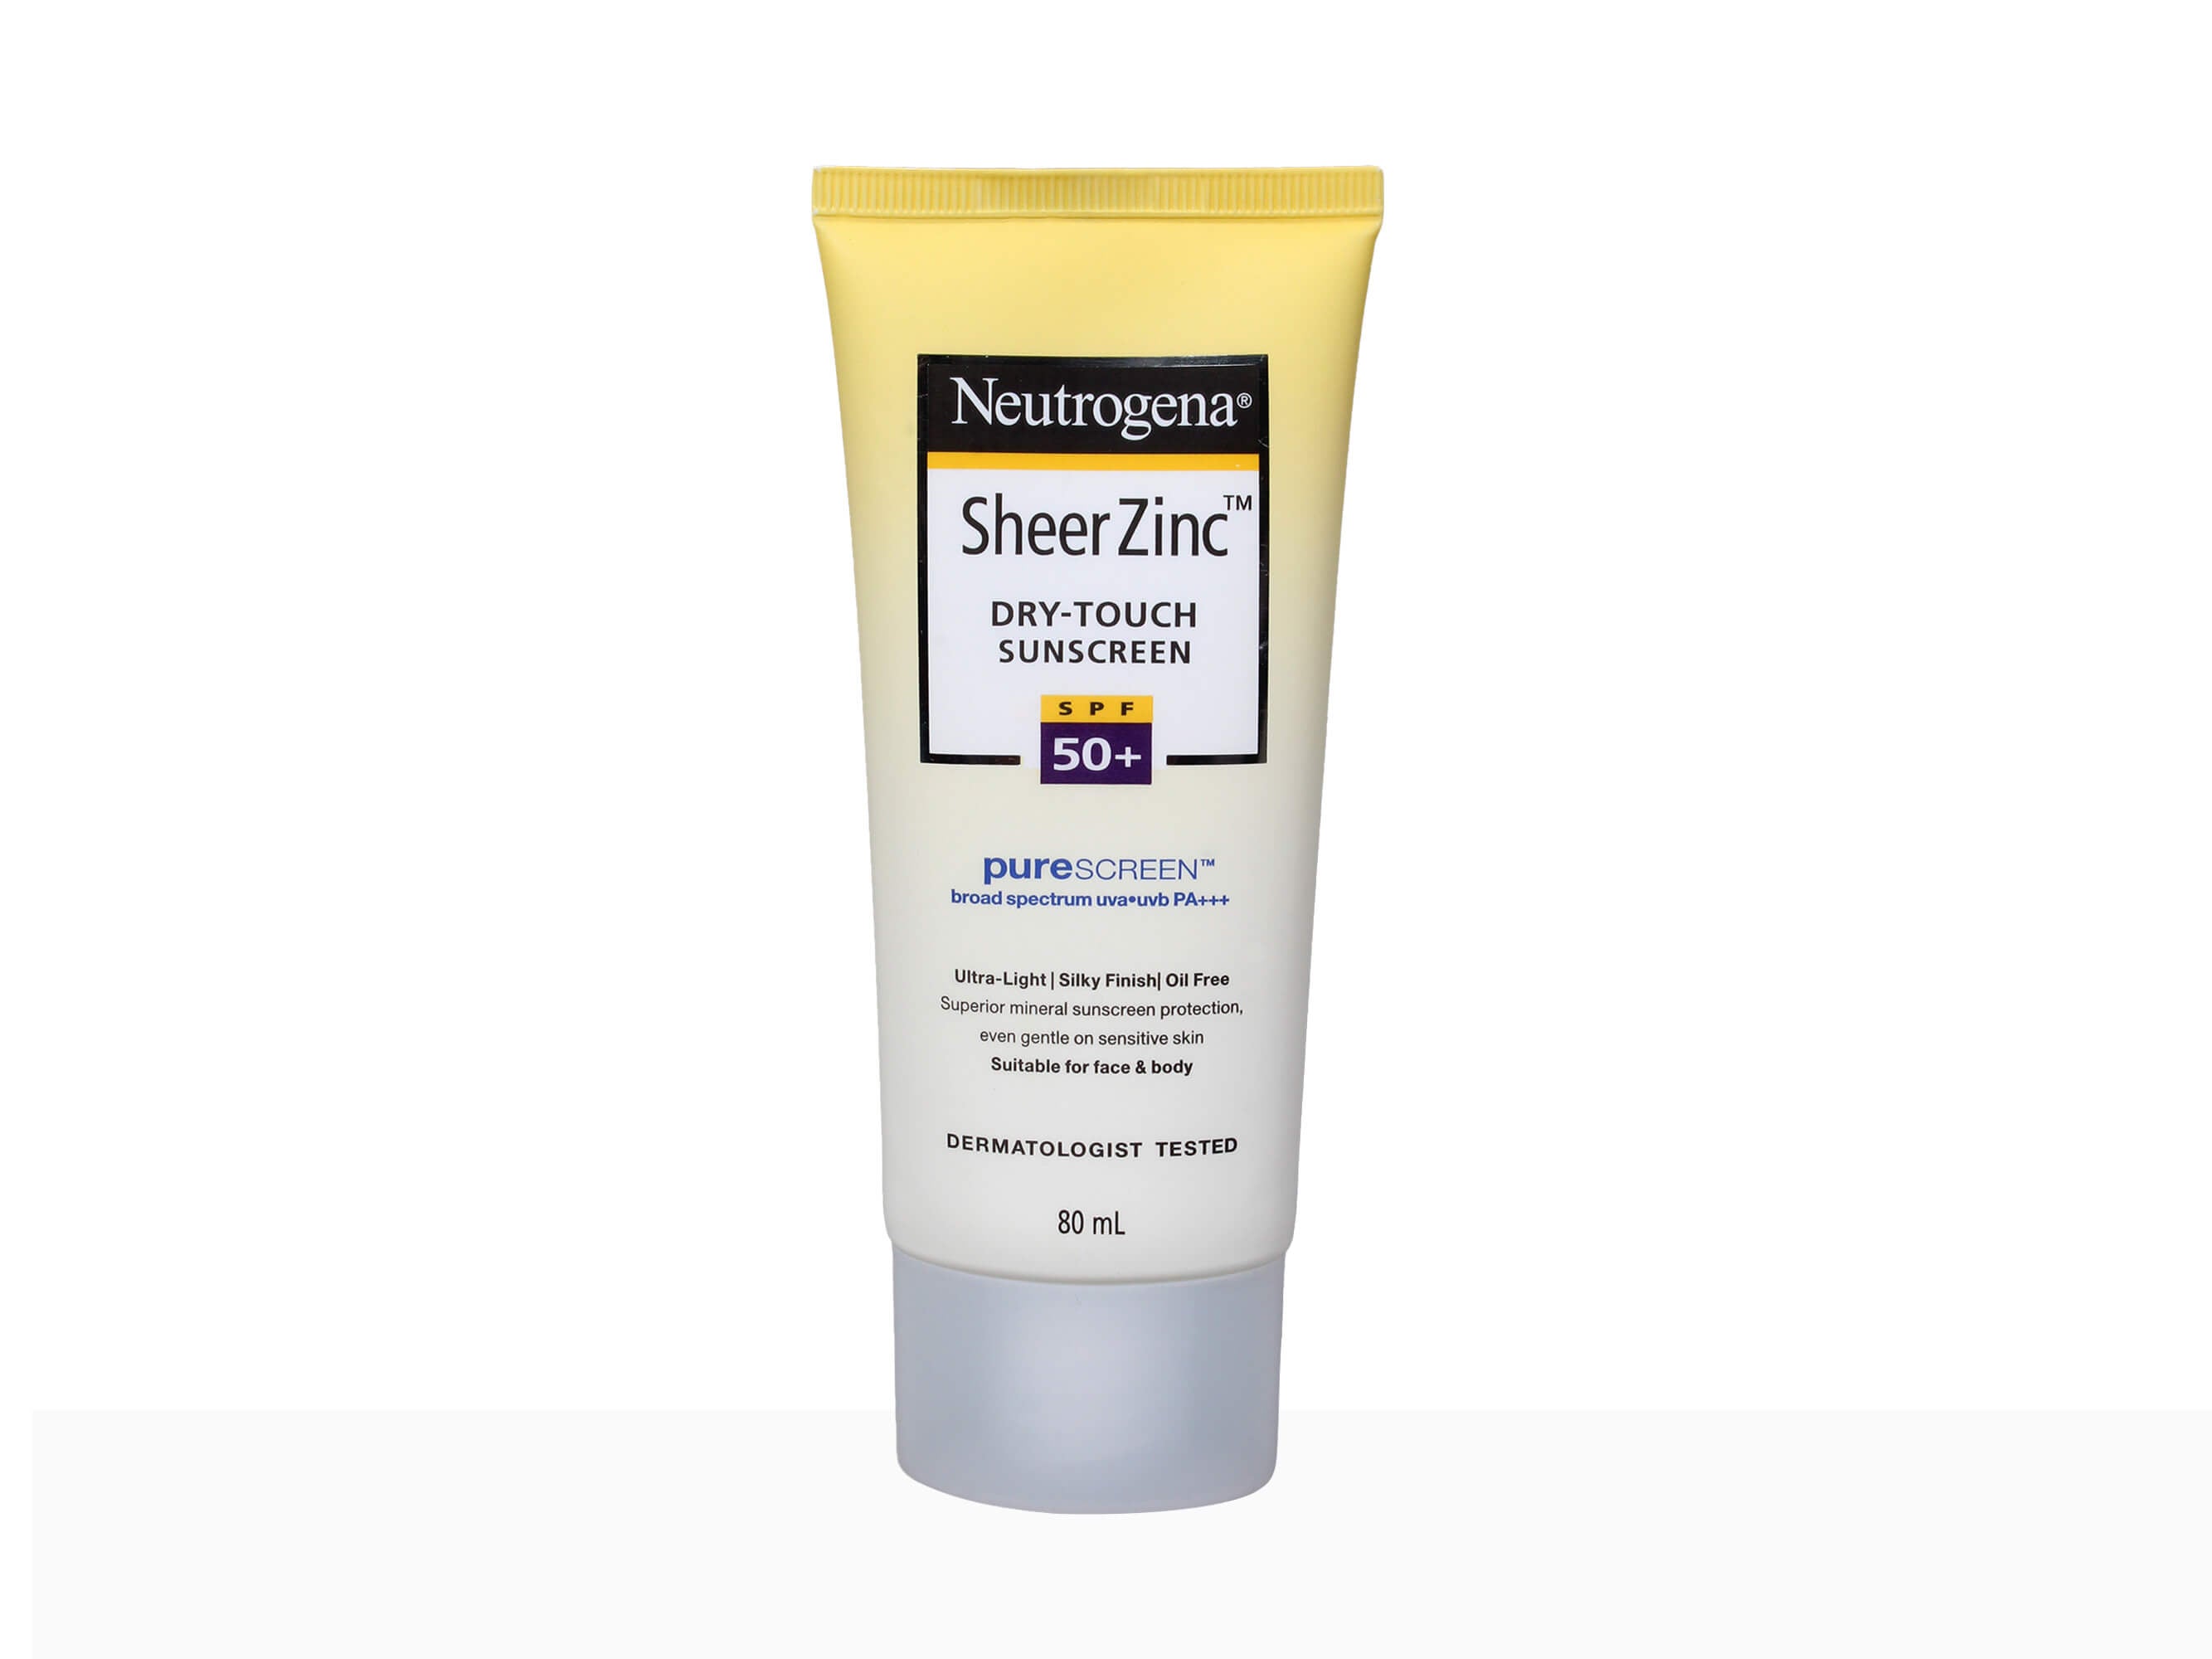 Neutrogena Sheer Zinc Dry Touch Sunscreen SPF 50+ PA+++ - Clinikally